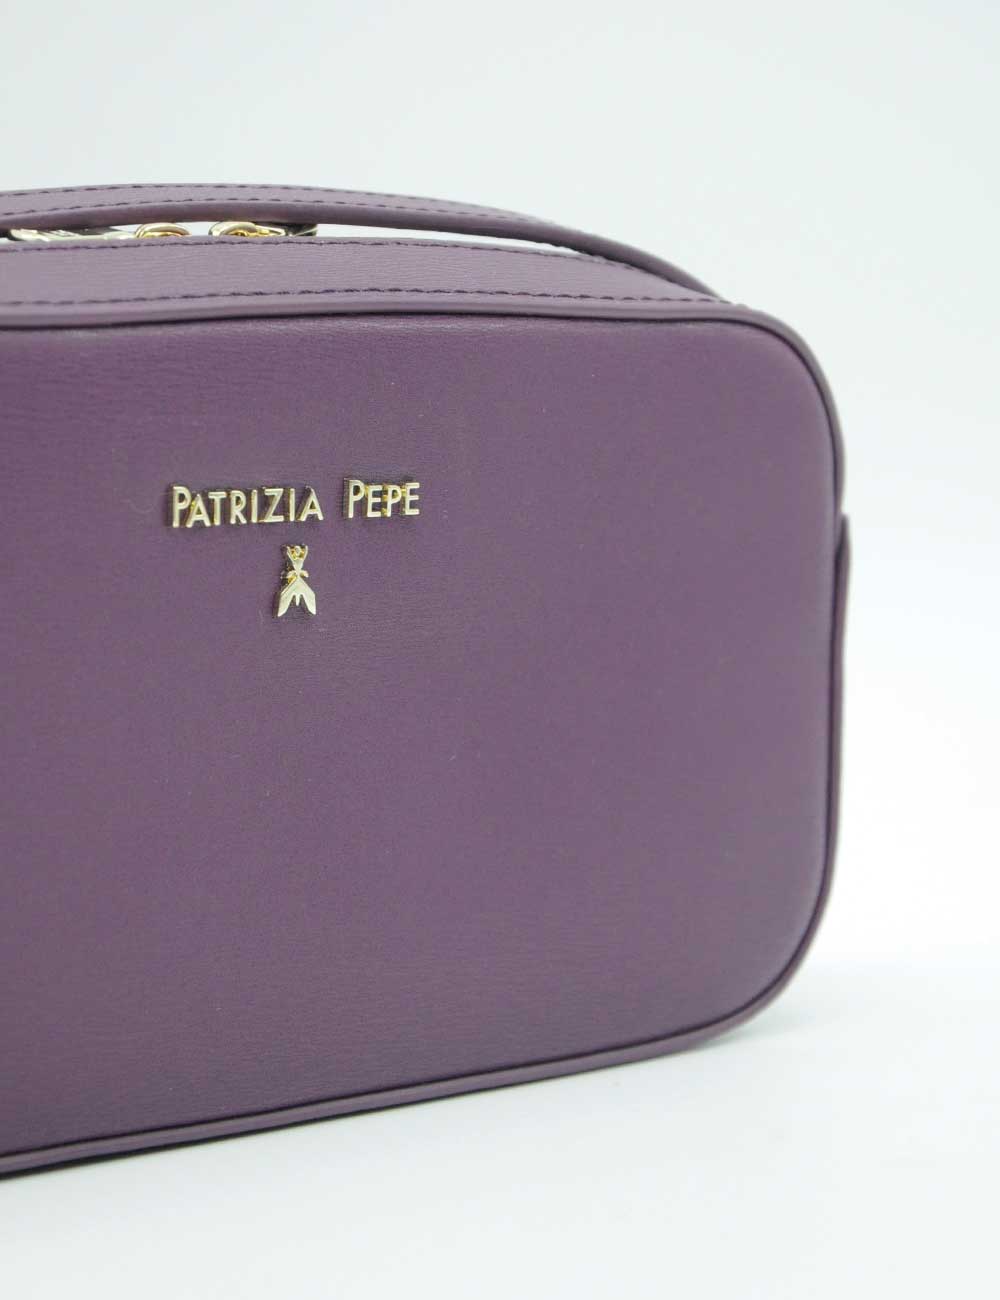 Patrizia Pepe Tracolla Futuristic Purple